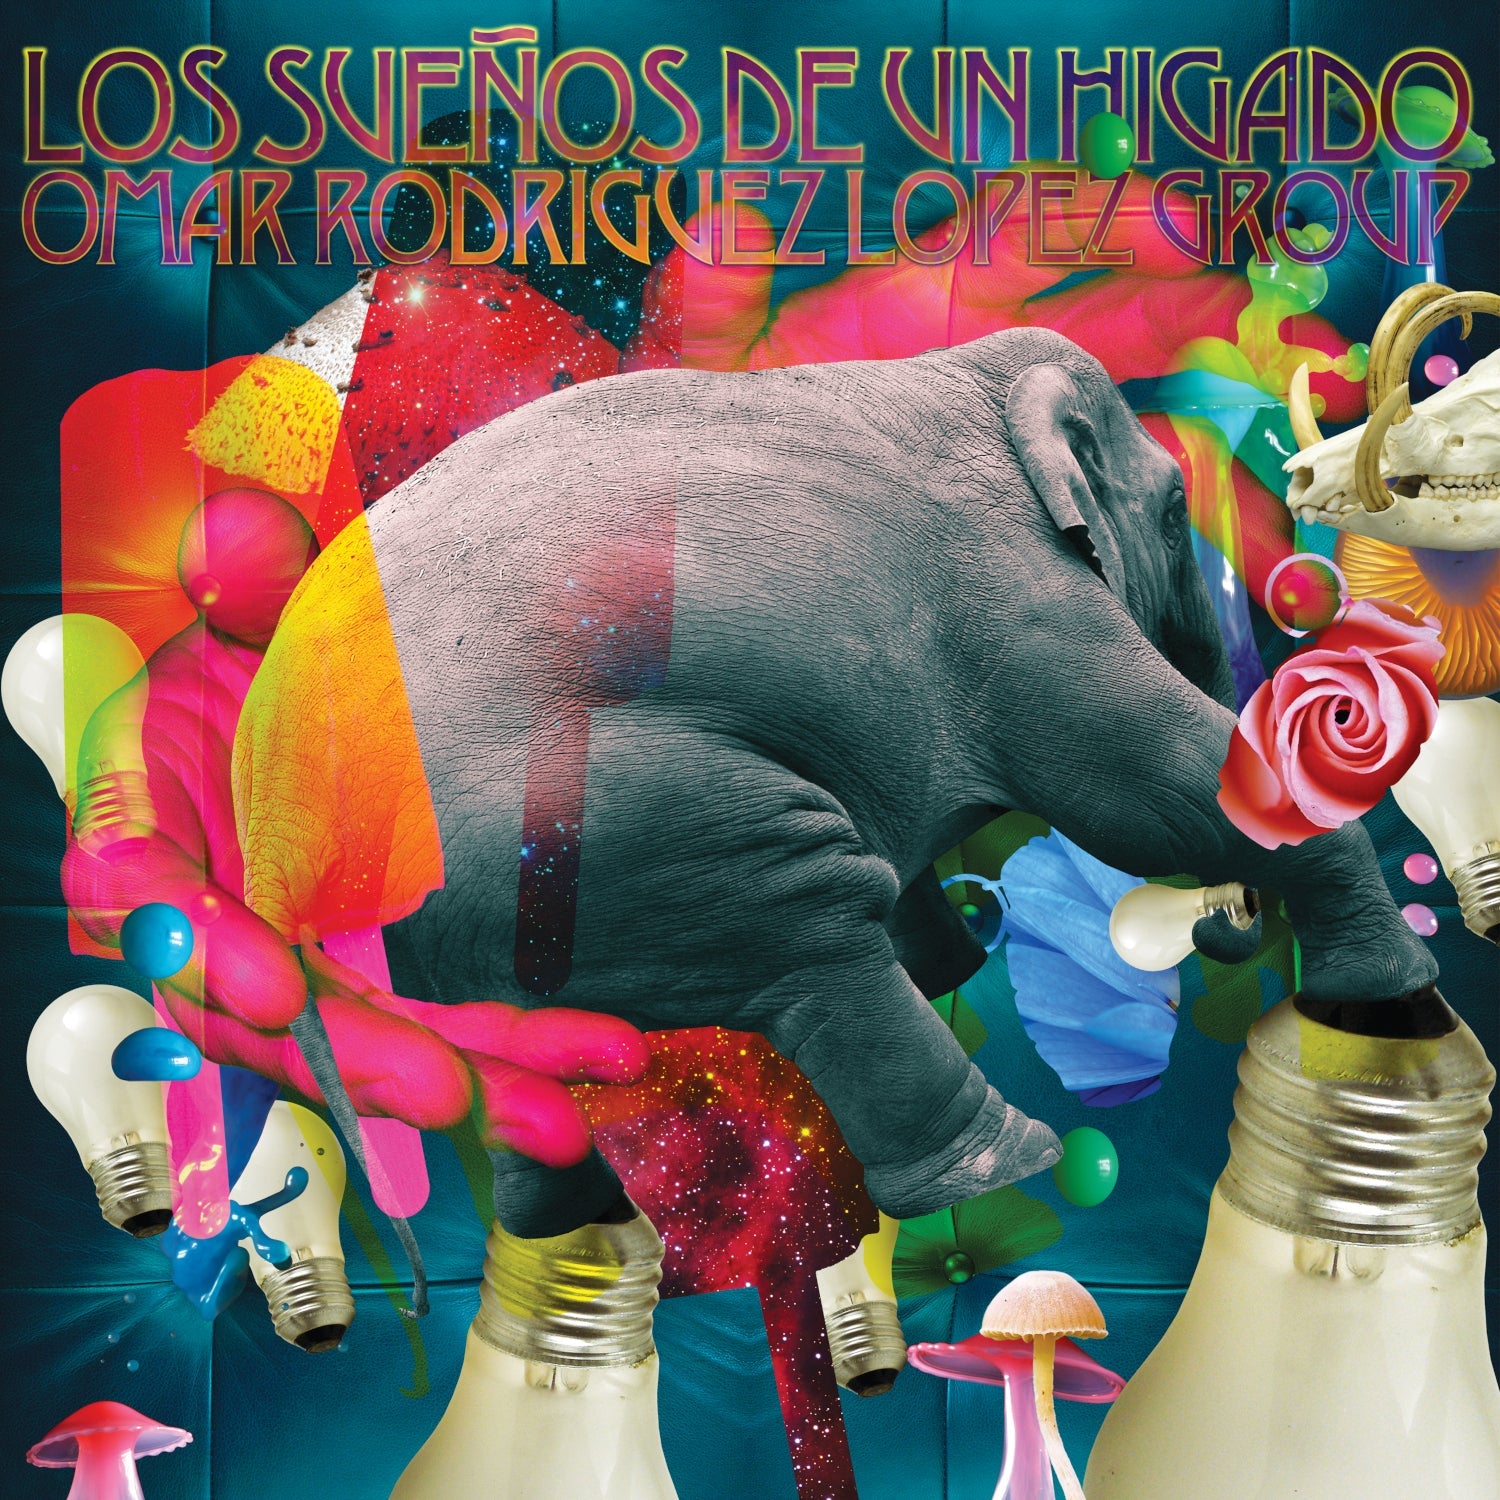 Omar Rodríguez-López Group - Los Sueños de un Hígado - LP